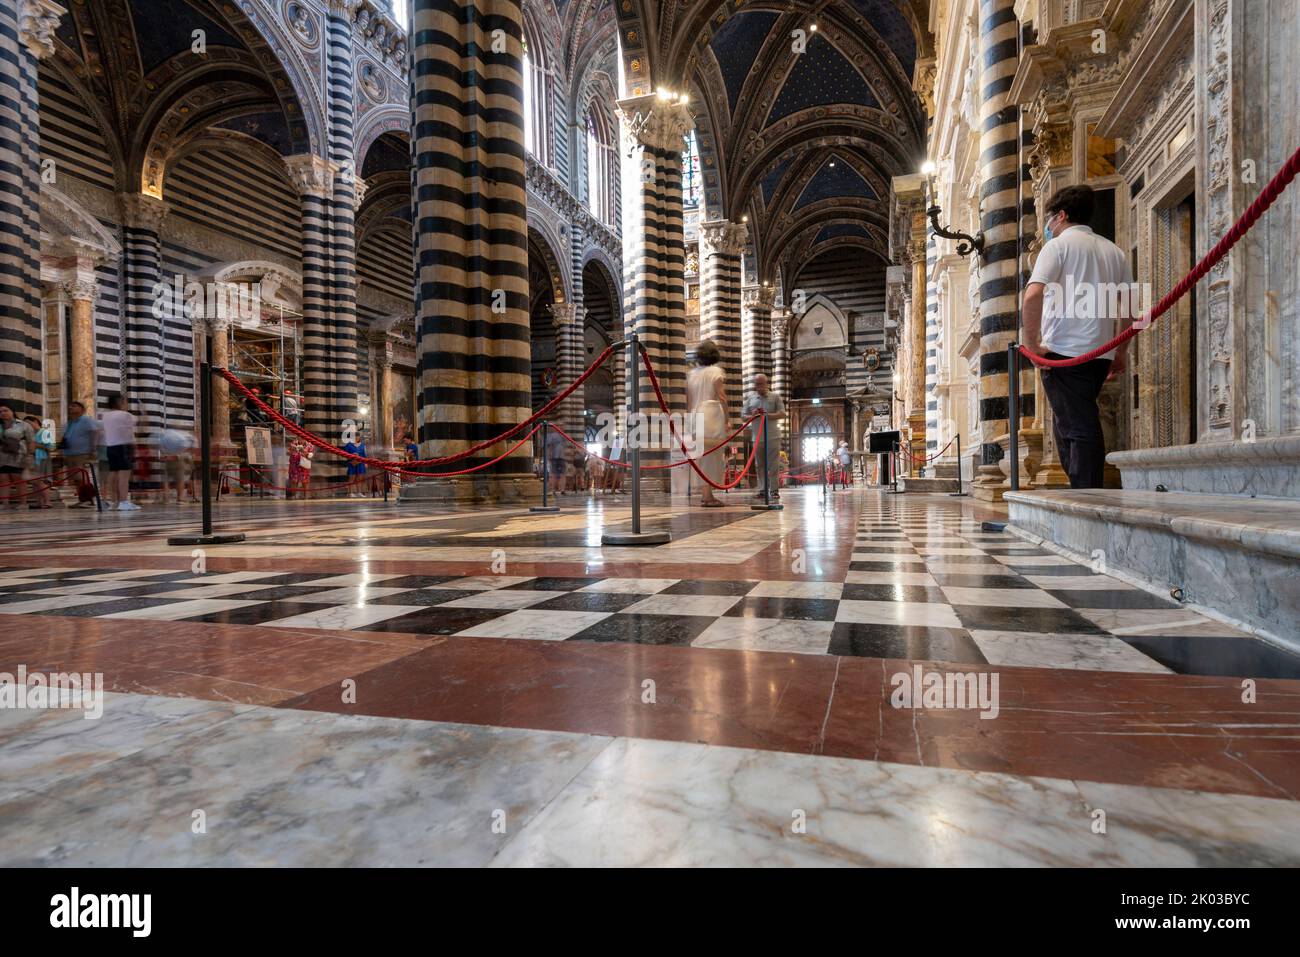 Cathedral Santa Maria Assunta, interior, Siena, Tuscany, Italy Stock Photo